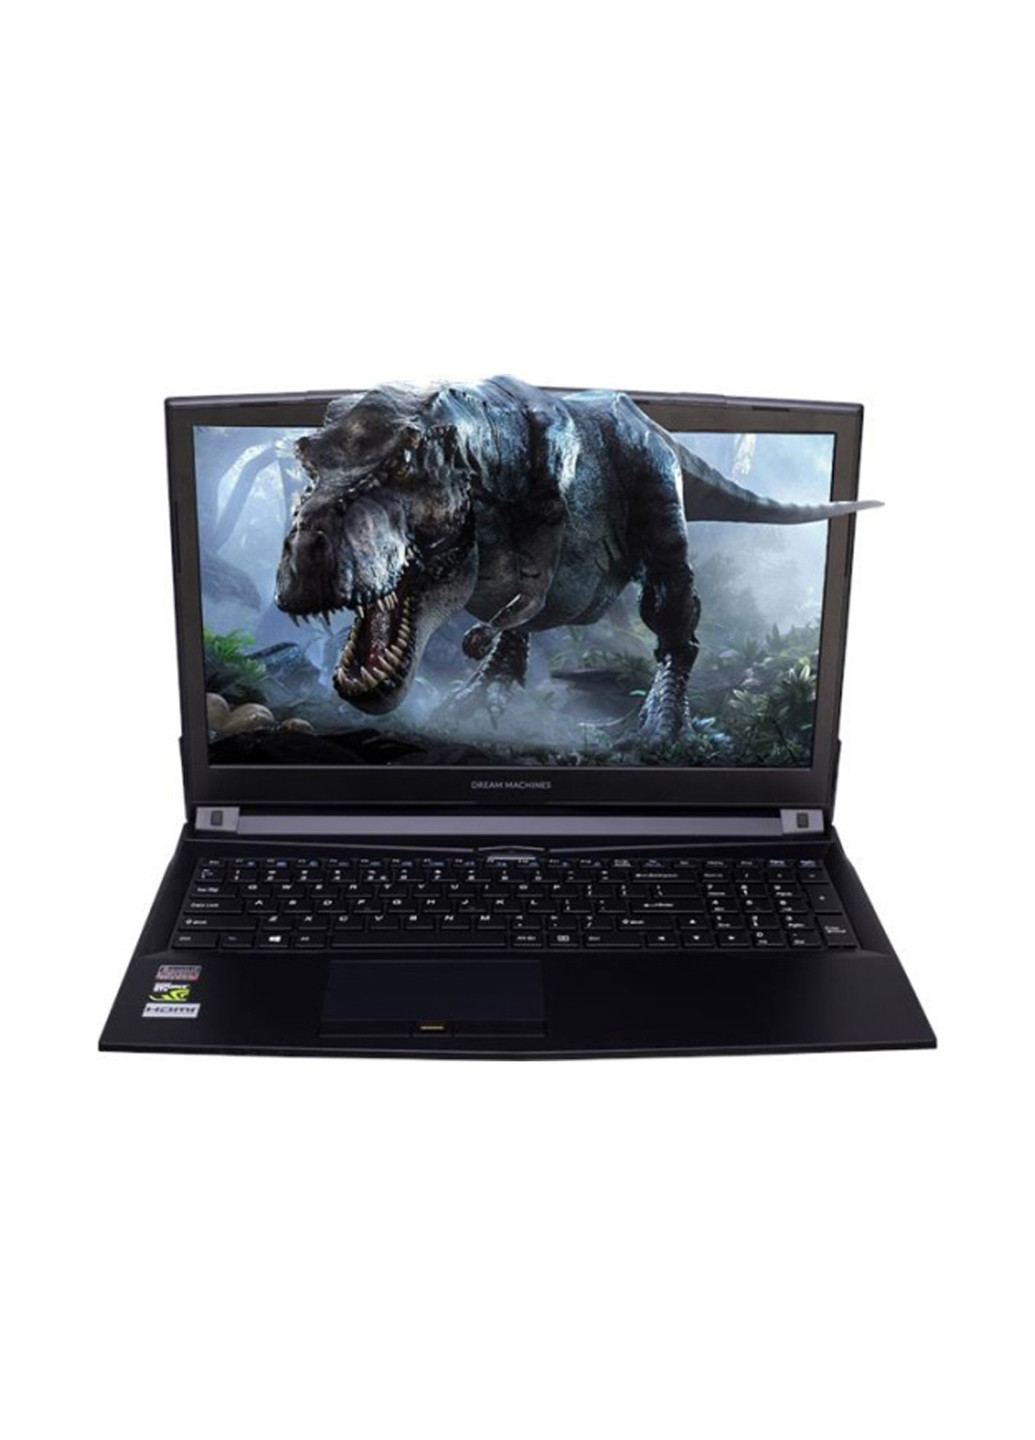 Ноутбук G1050-15 Clevo (G1050-15UA48) Black Dream Machines clevo g1050-15 (g1050-15ua48) black (136402611)